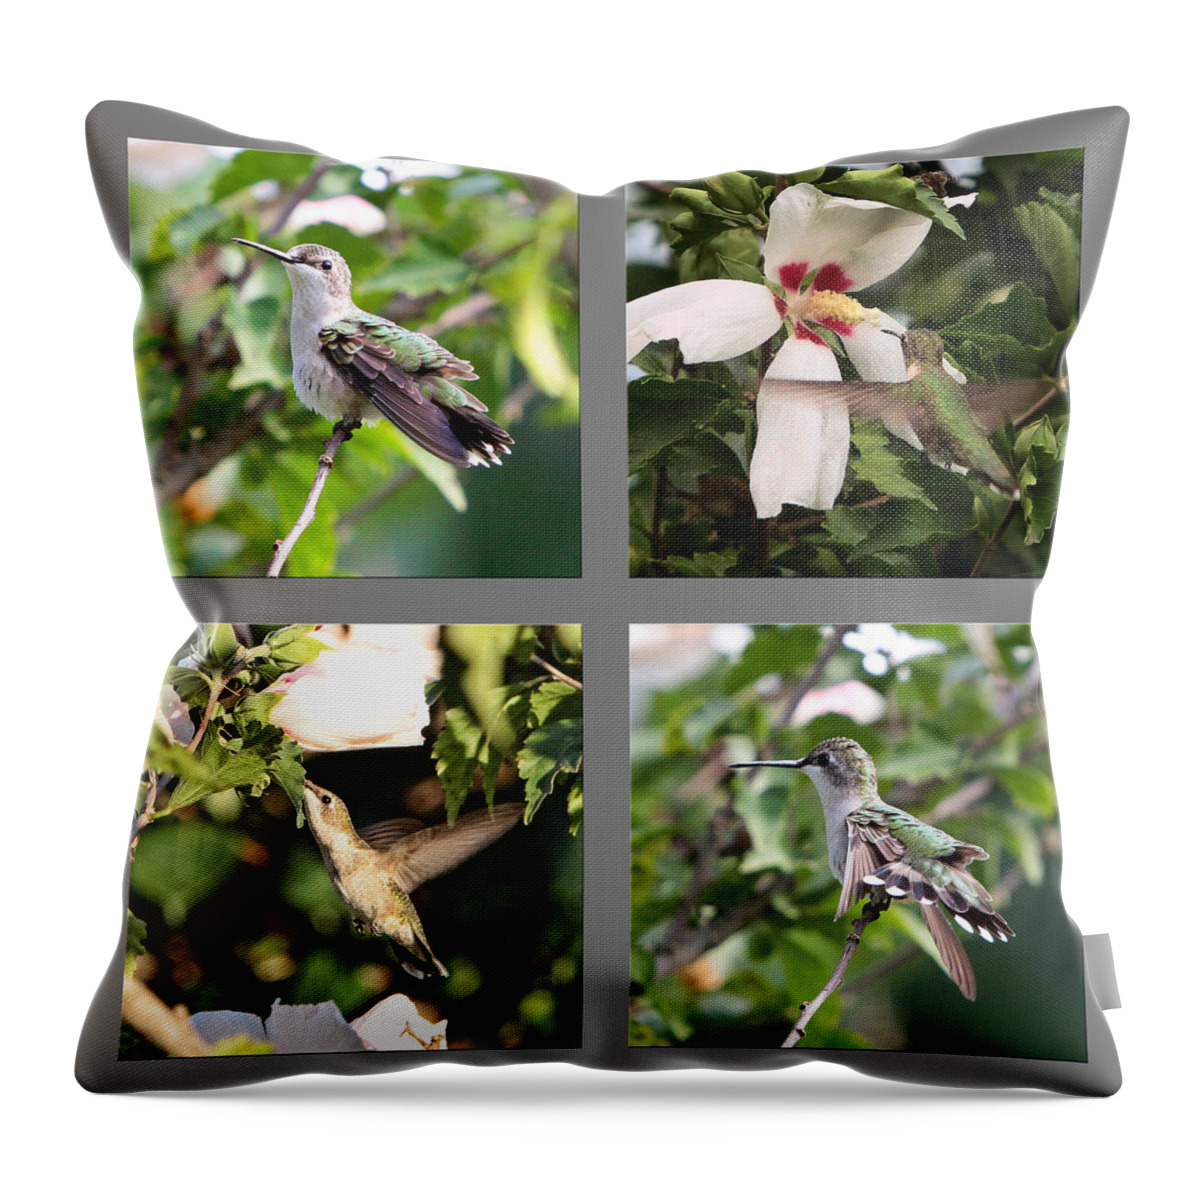 Nature Throw Pillow featuring the photograph Hummingbirds by John Freidenberg